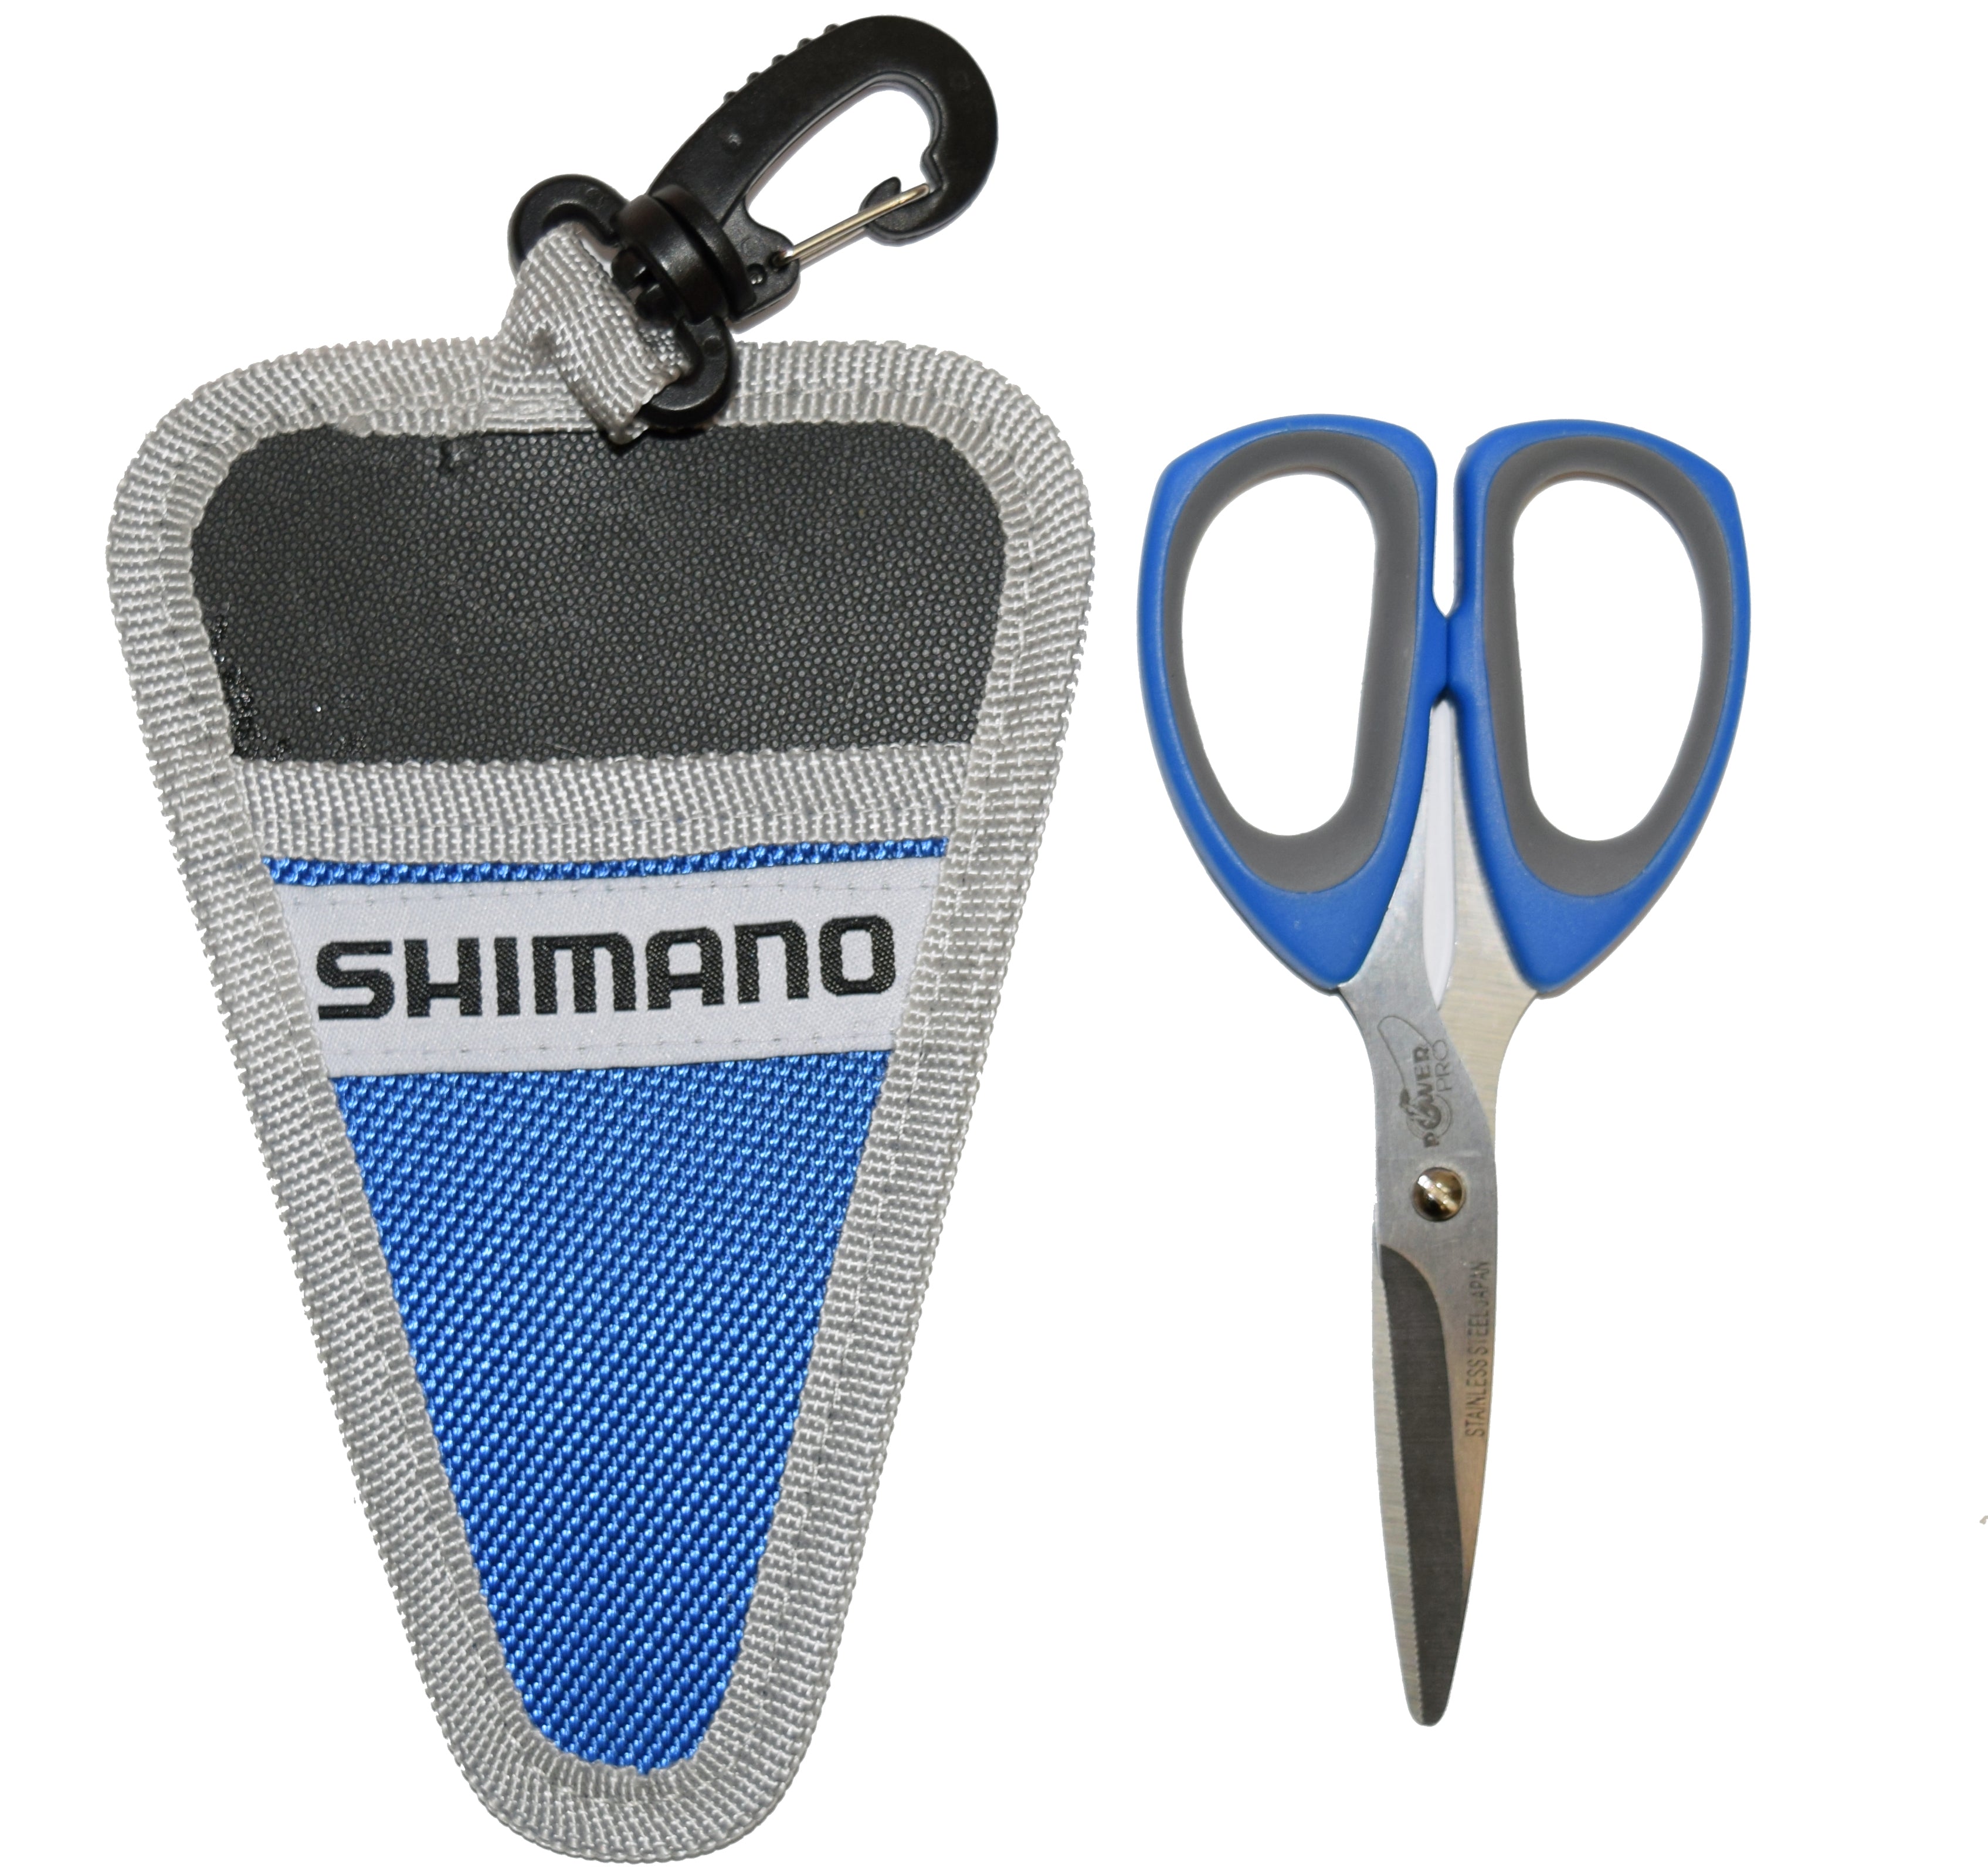 Shimano Brutas Silver Nickel 5 Scissors with Sheath